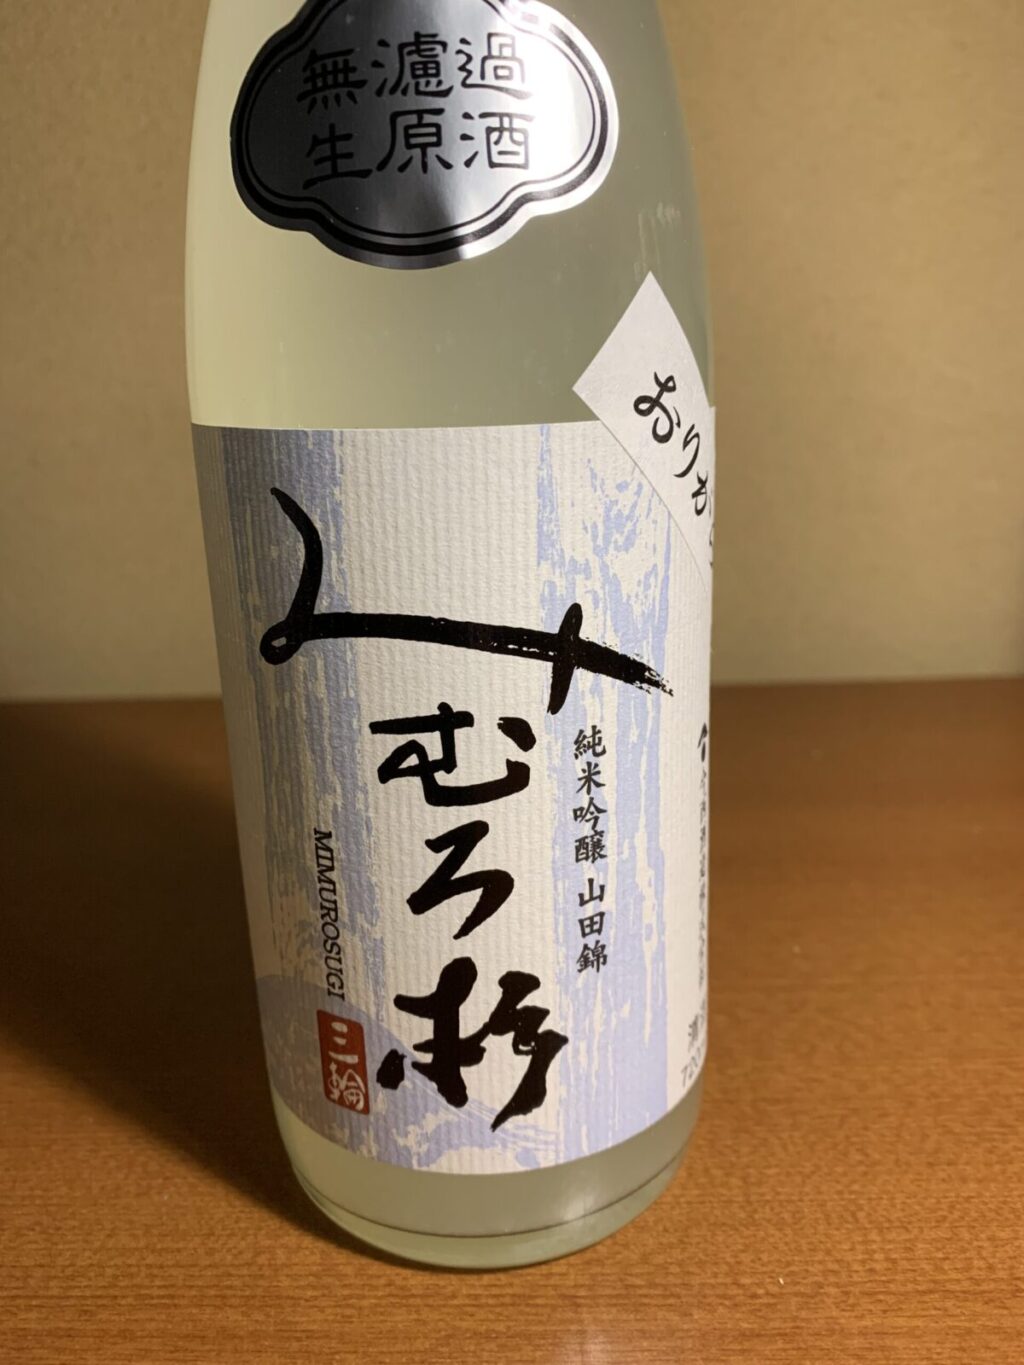 三輪の神様のもとで醸される日本酒『みむろ杉』は甘みと酸味の調和が抜群